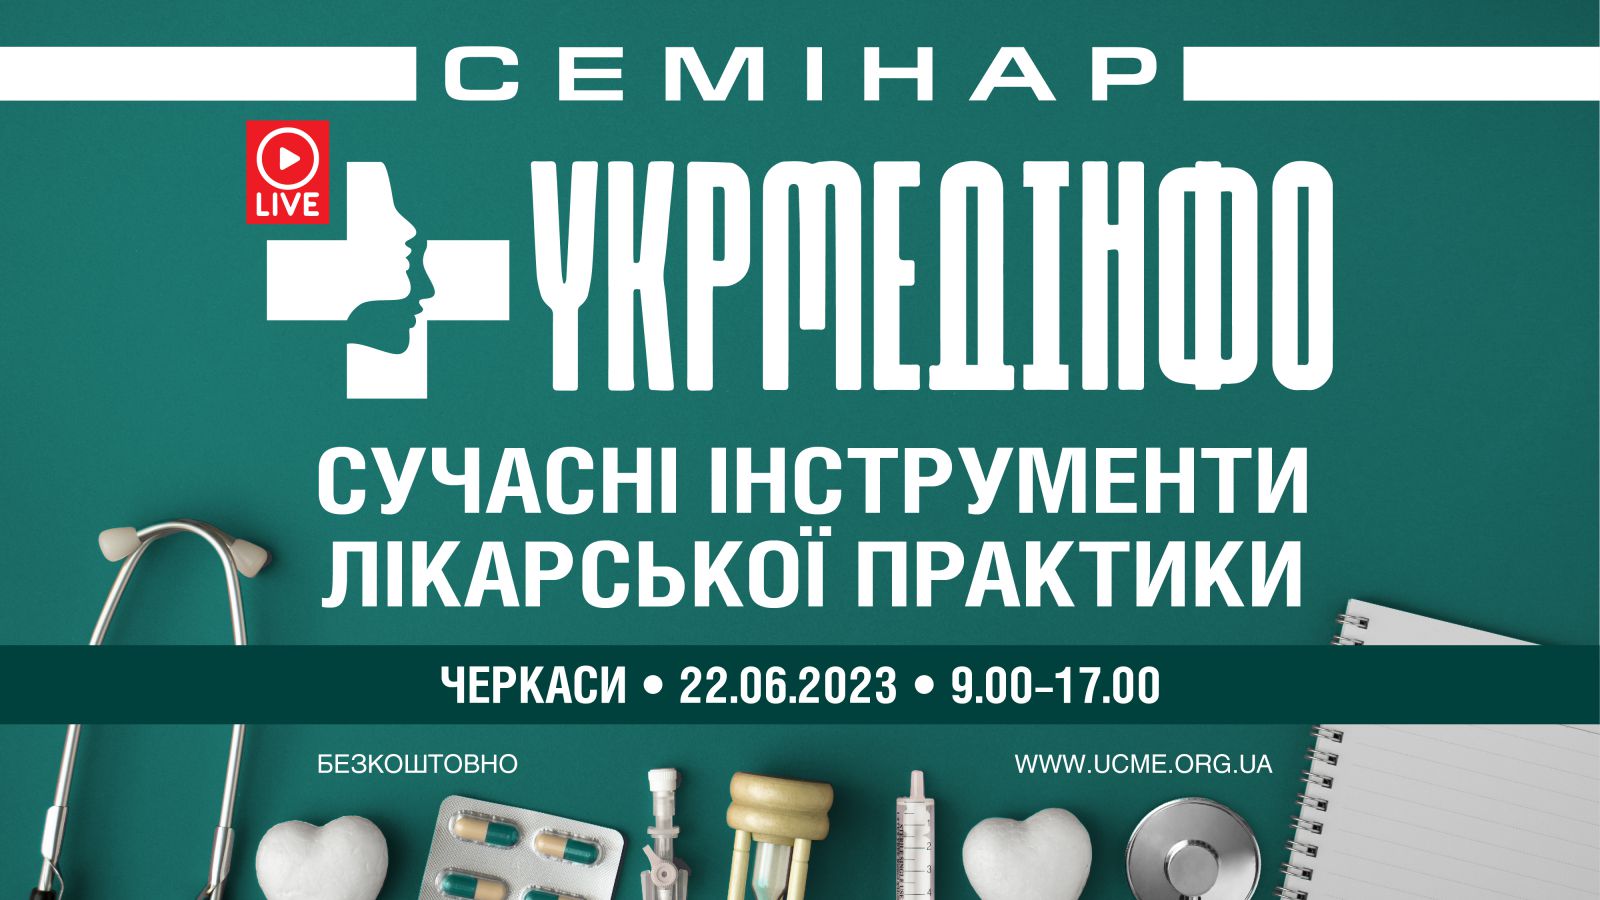 Семінар «УкрМедІнфо: сучасні інструменти лікарської практики»